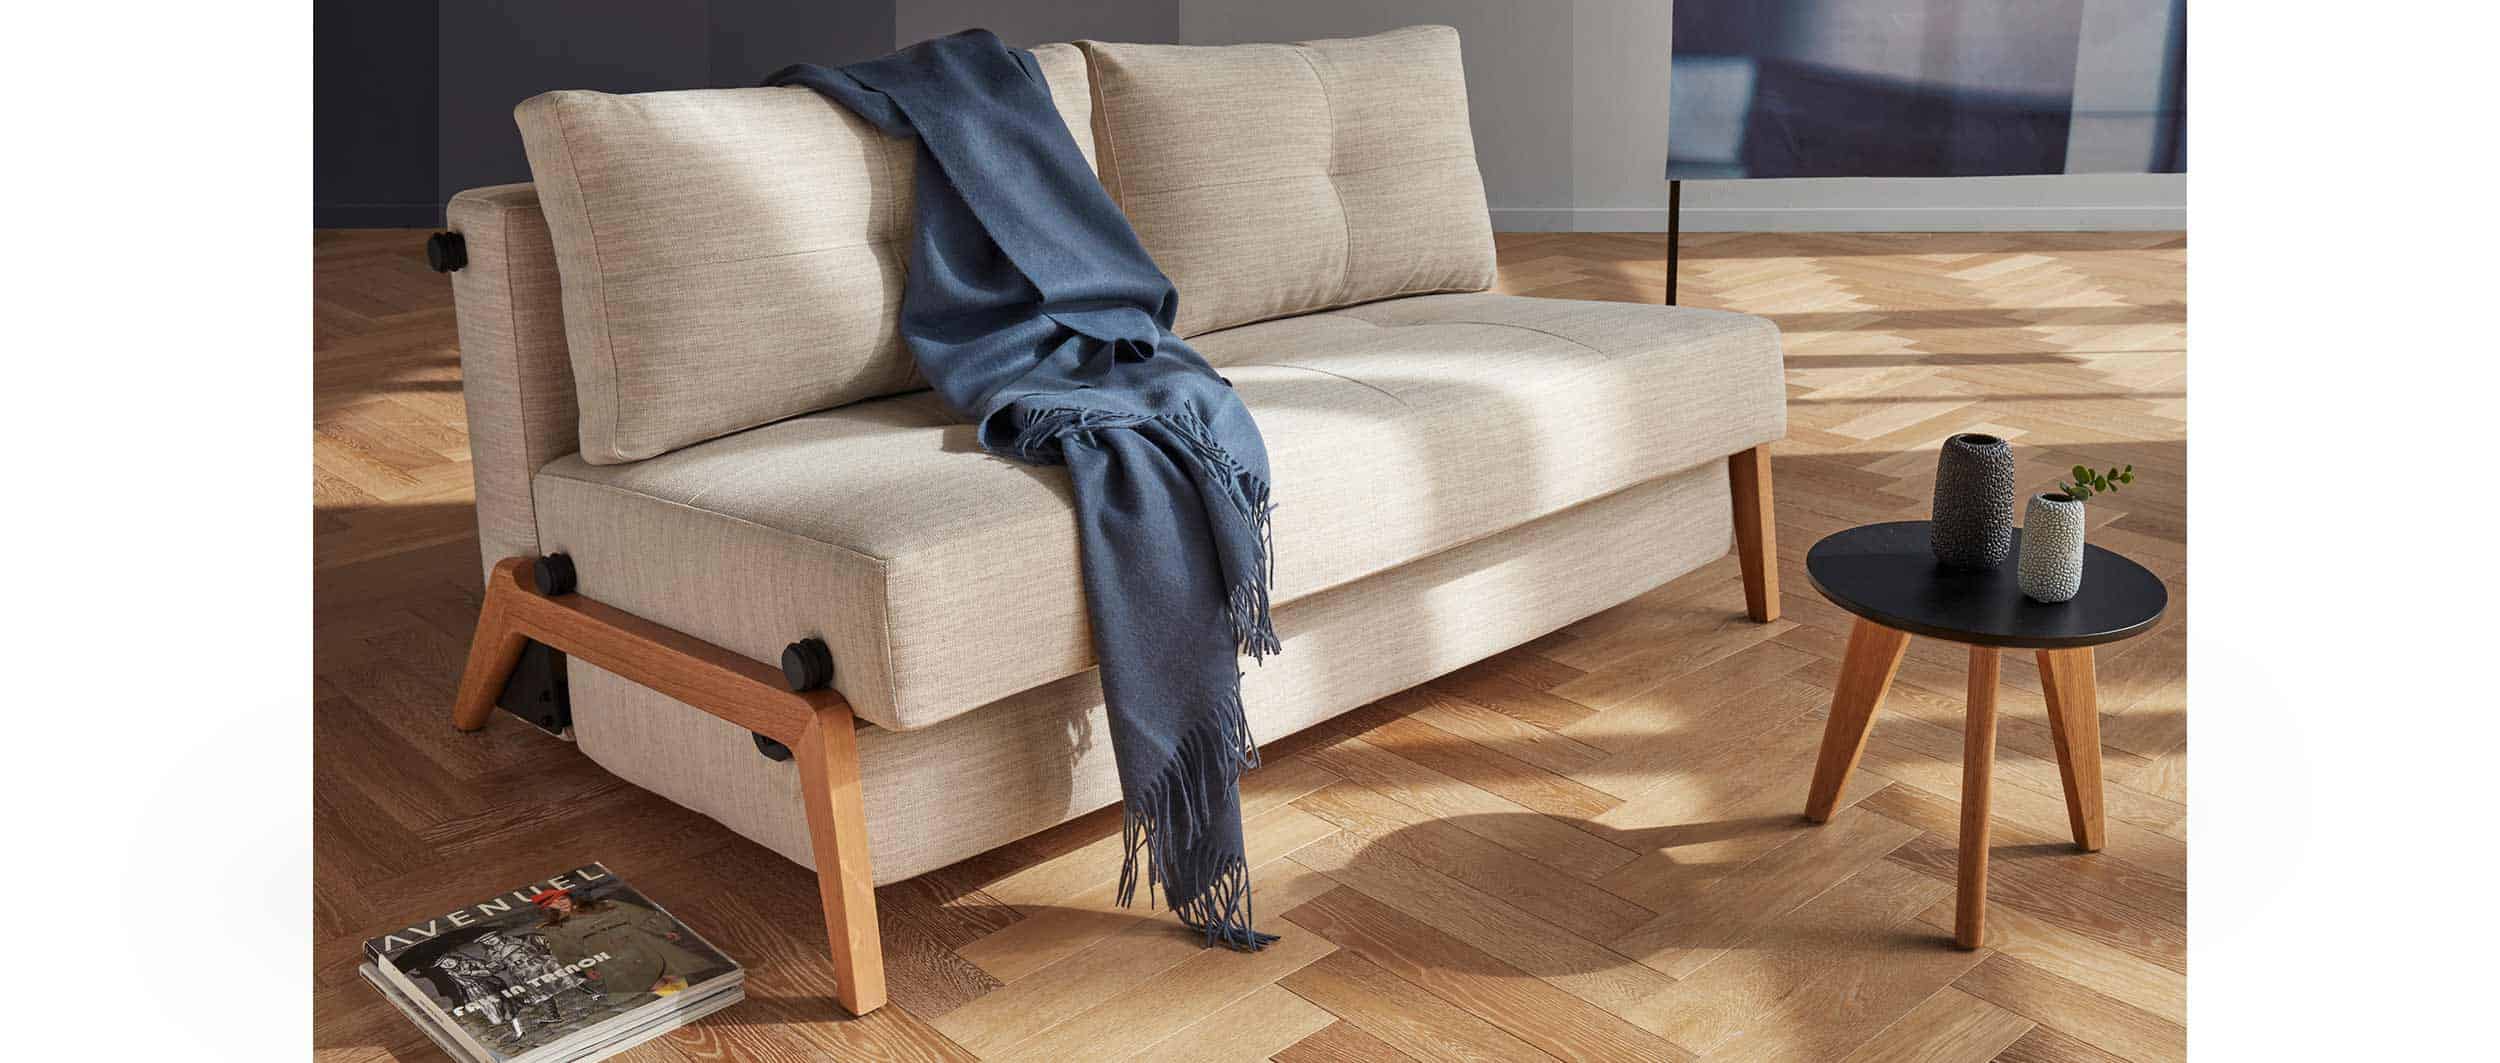 kleines Schlafsofa CUBED 02 von Innovation, skandinavisches Design mit hellen Holzfüßen, Gästebett ohne Armlehnen - 140x200cm